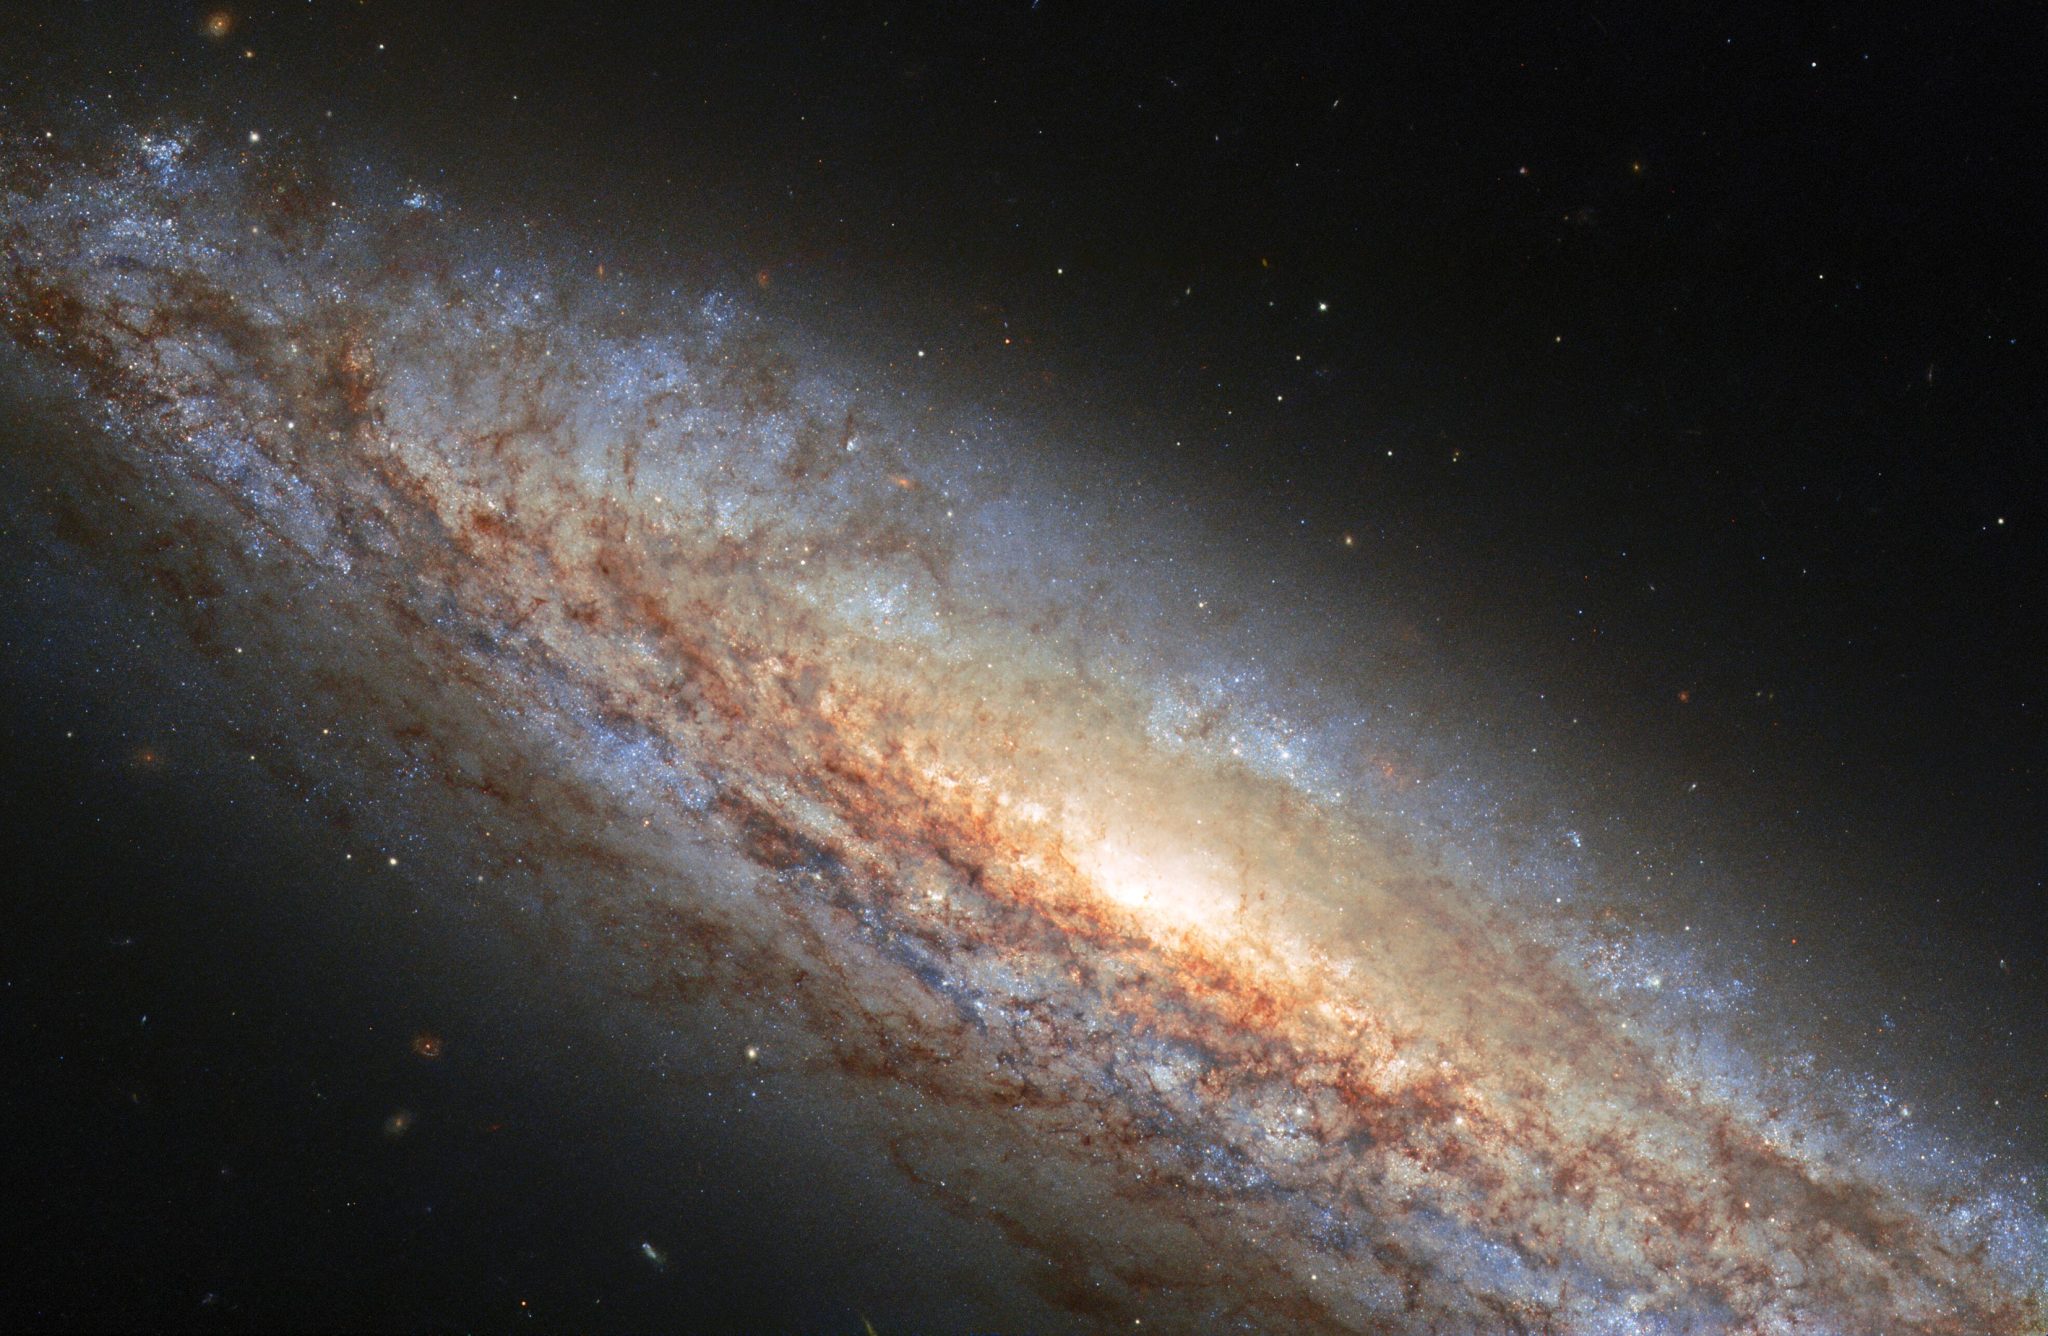 室女座螺旋星系NGC 4666能量惊人的超新星爆炸超级风